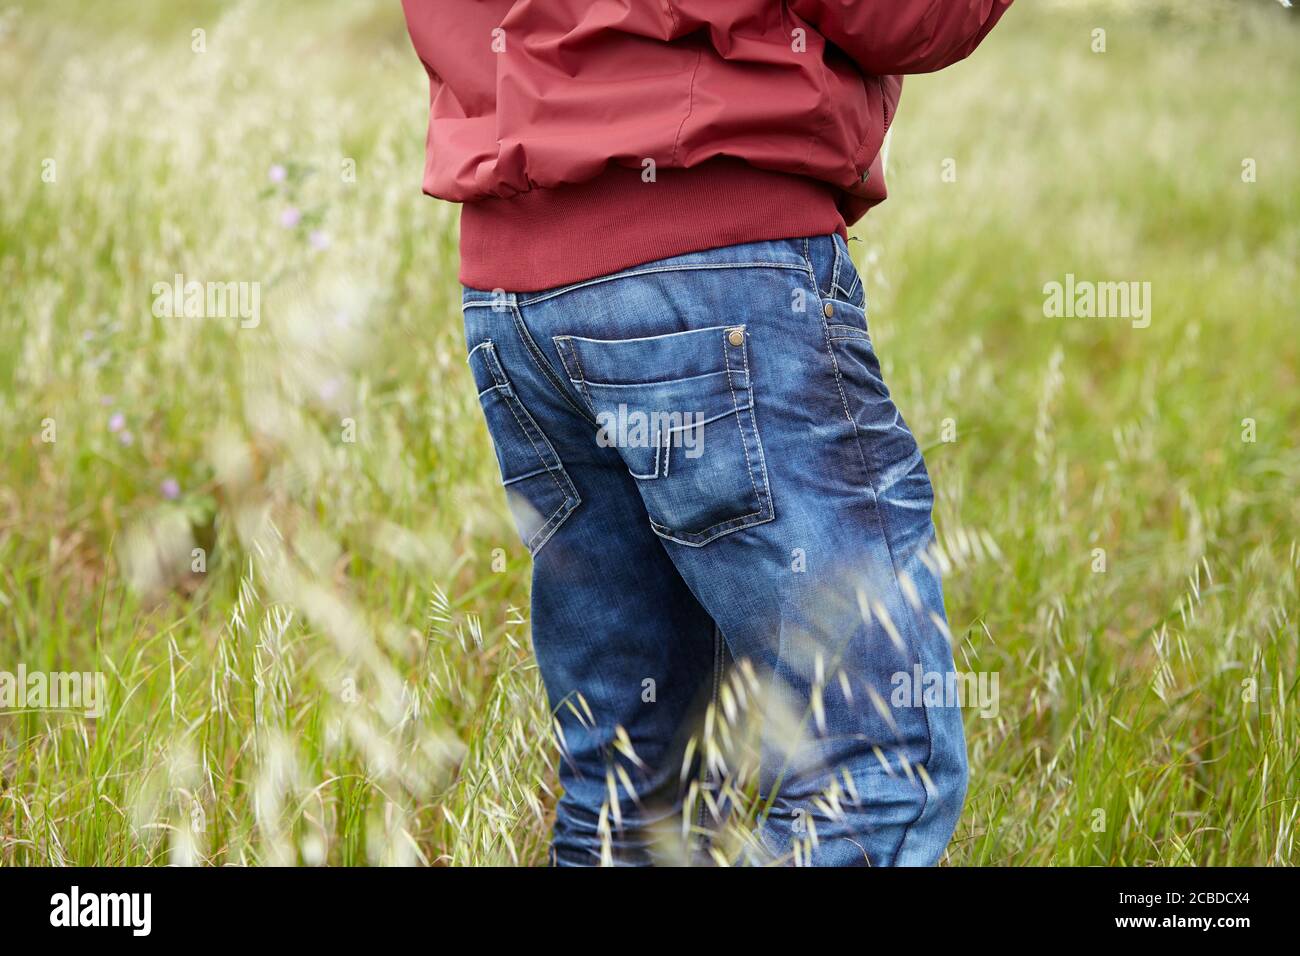 Junge mit Jeans und Chaket auf dem Gras. Stockfoto